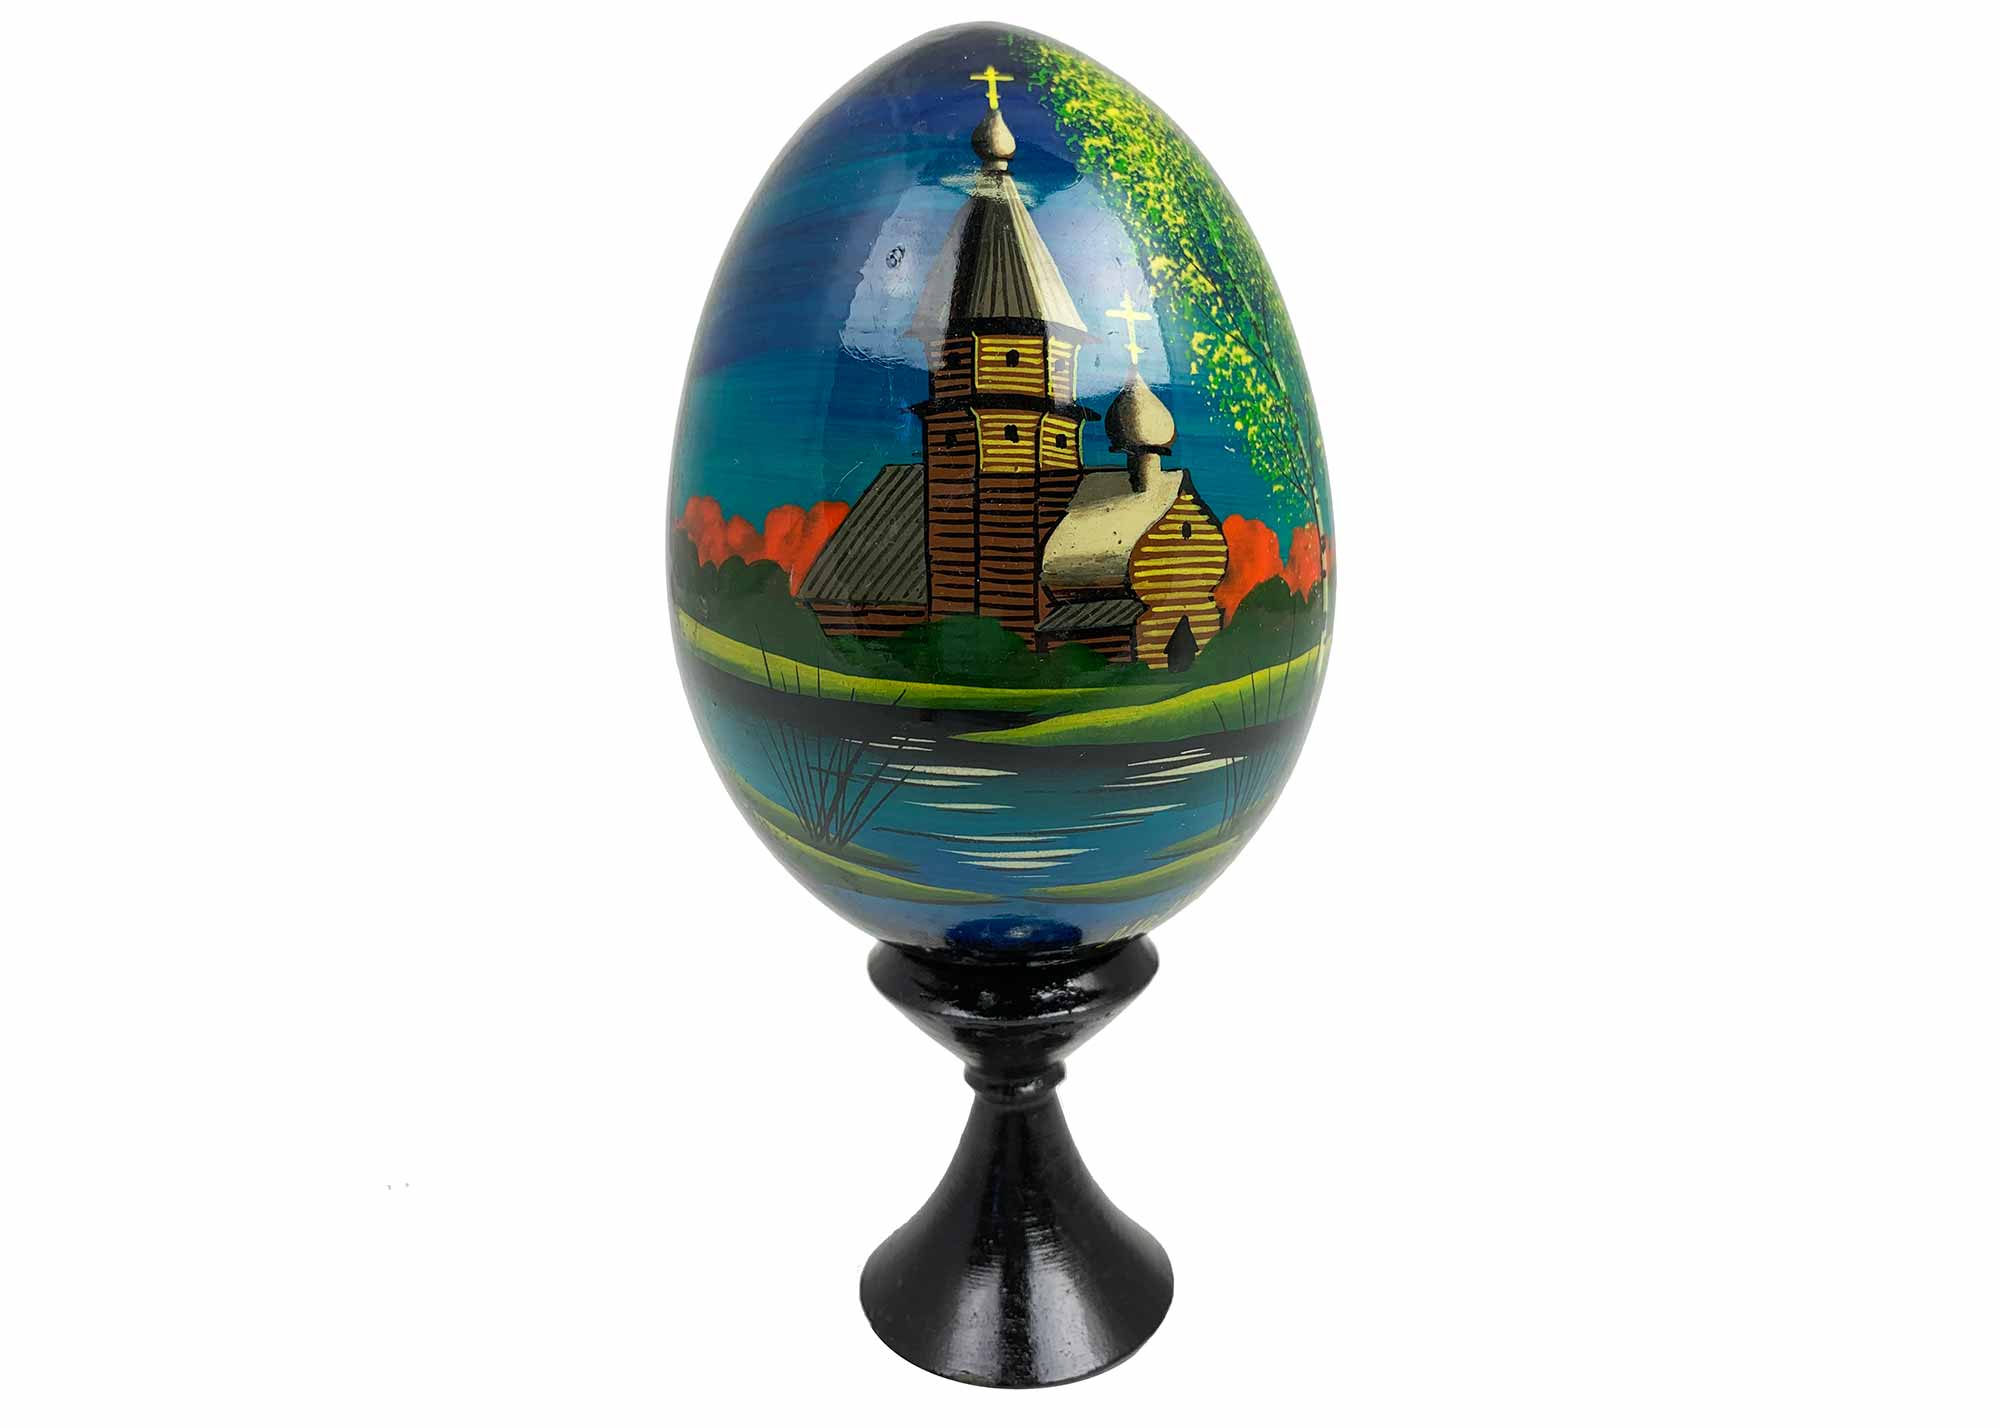 Buy Vintage Scenic Landscape Egg w/ Stand 2.75" at GoldenCockerel.com